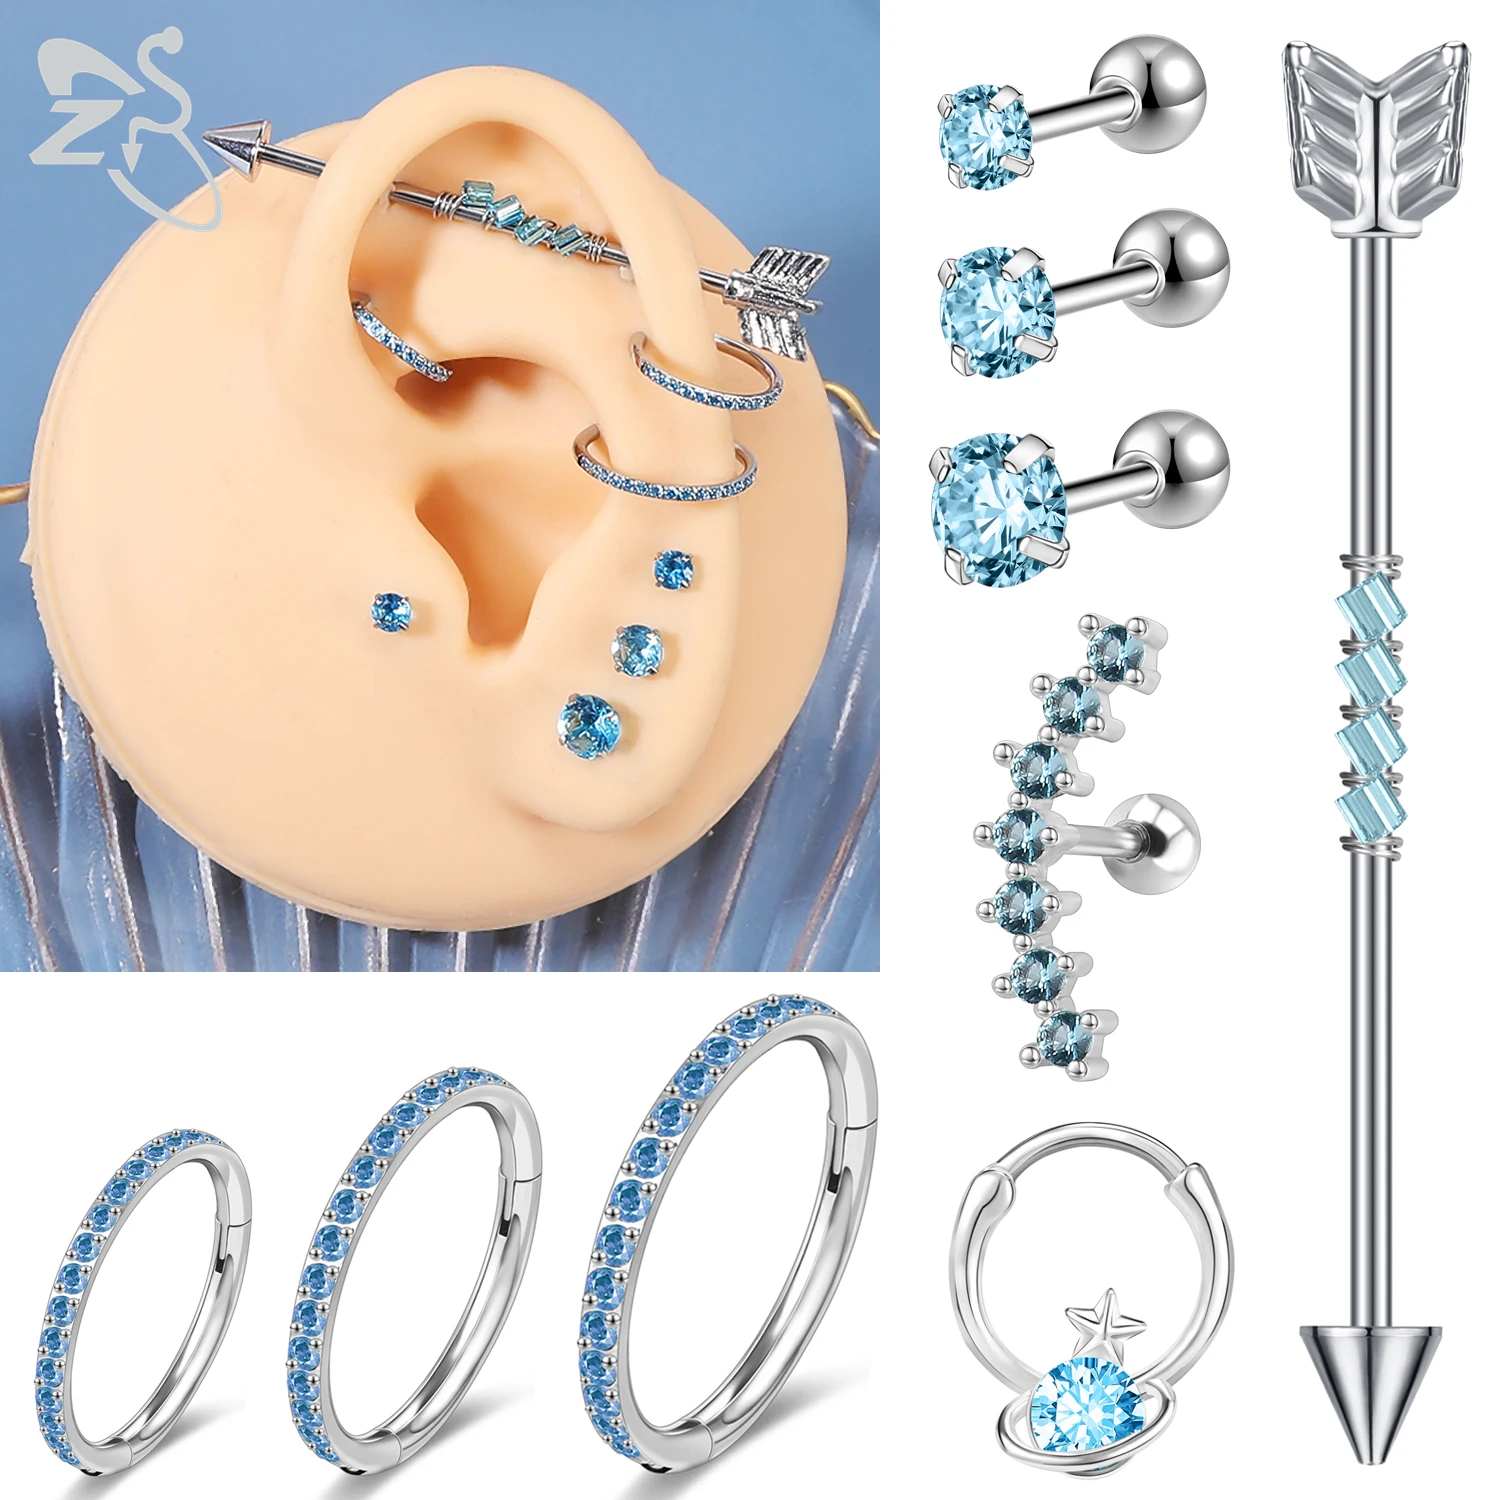 ZS 1 Piece Blue Zircon Stud Earring For Women Girls Stainless Steel Hoop Ear Cartilage Helix Conch Piercing Screw Back Earrings